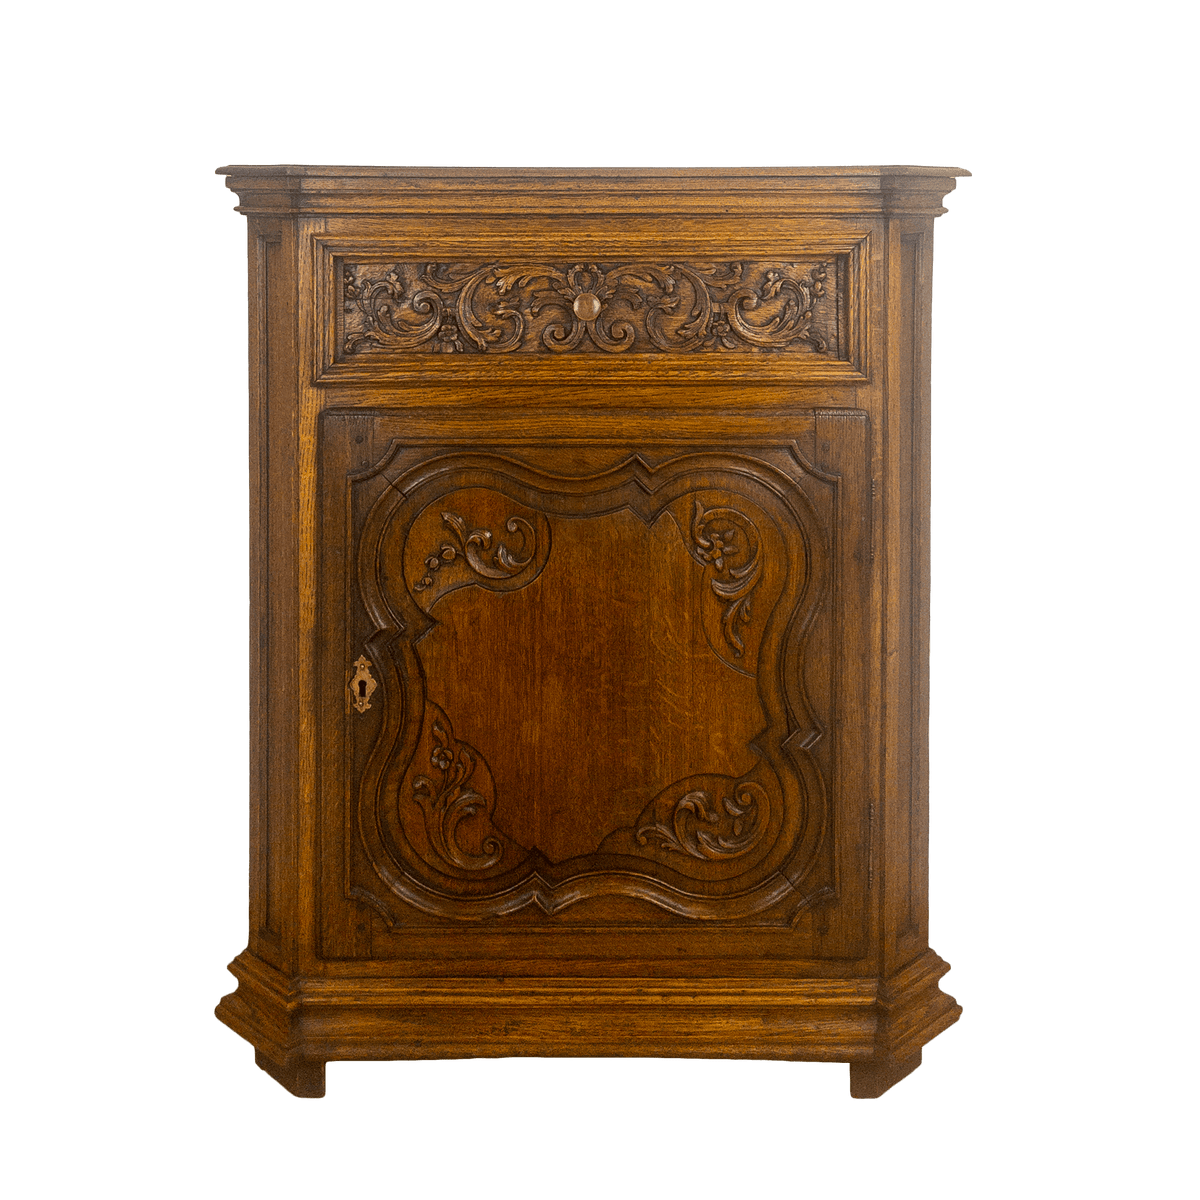 French Oak Cabinet